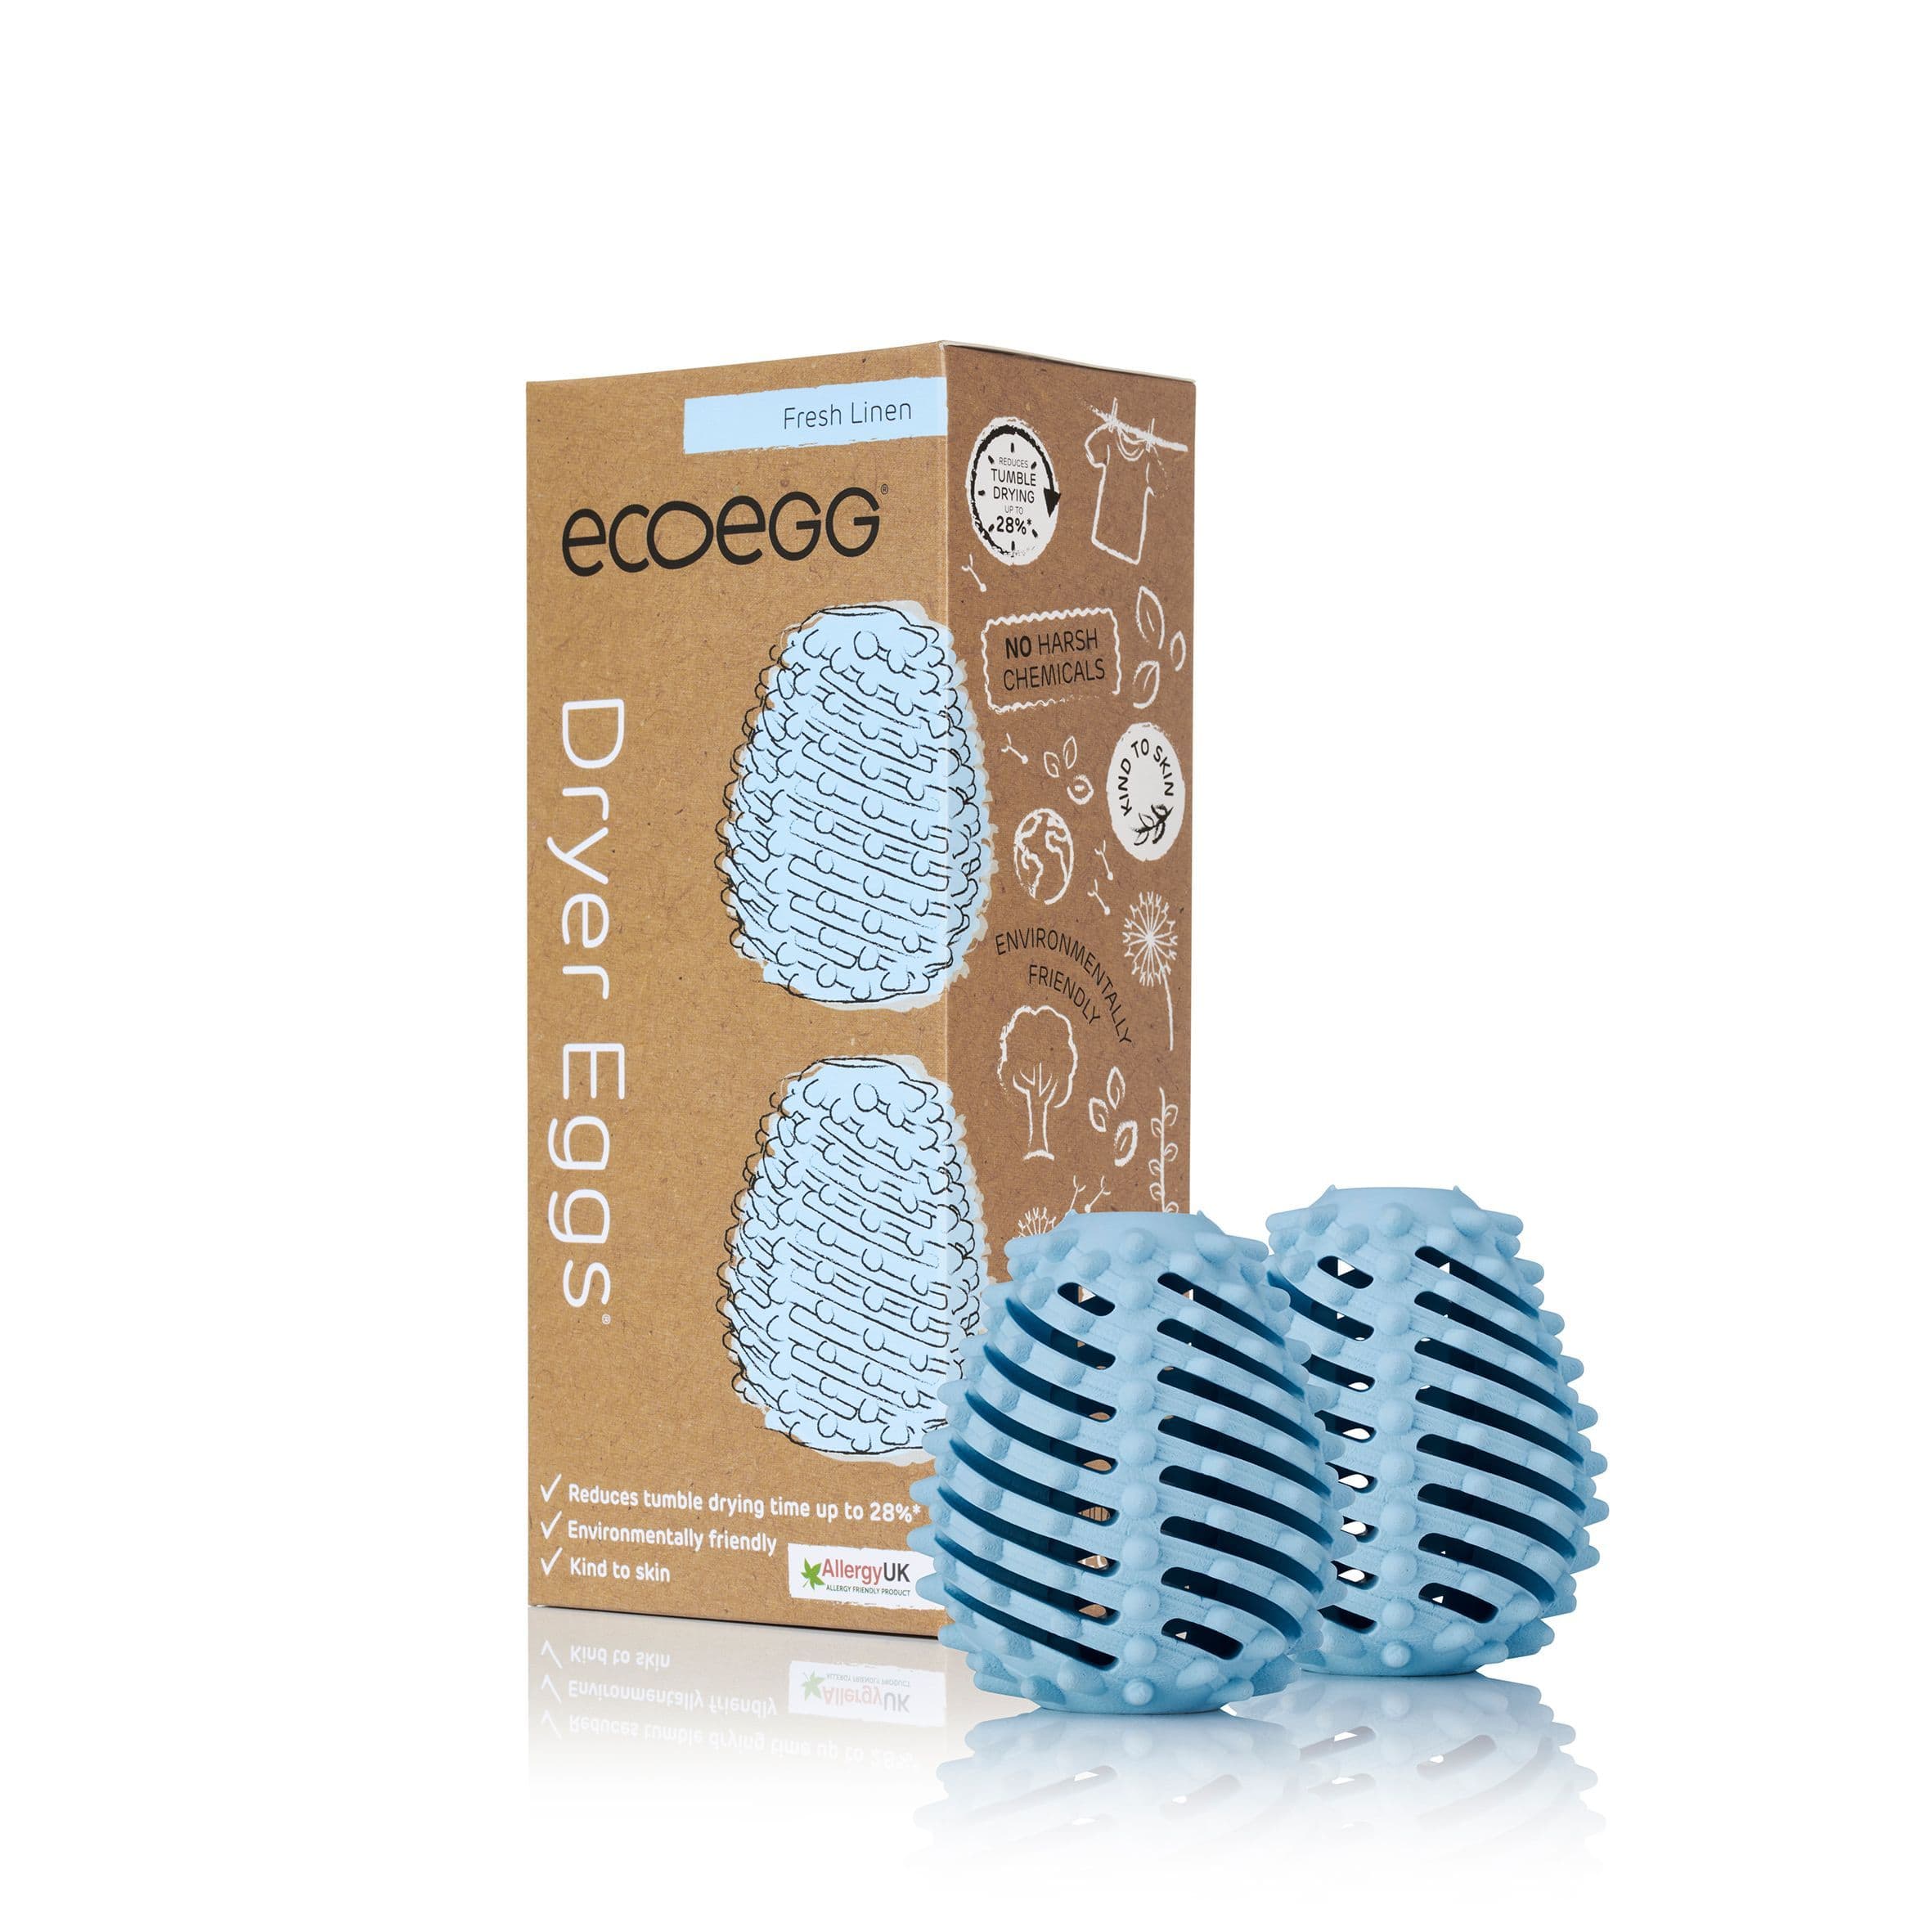 Ecoegg Miljøvennlig vask Ecoegg tørketrommel - fresh linen